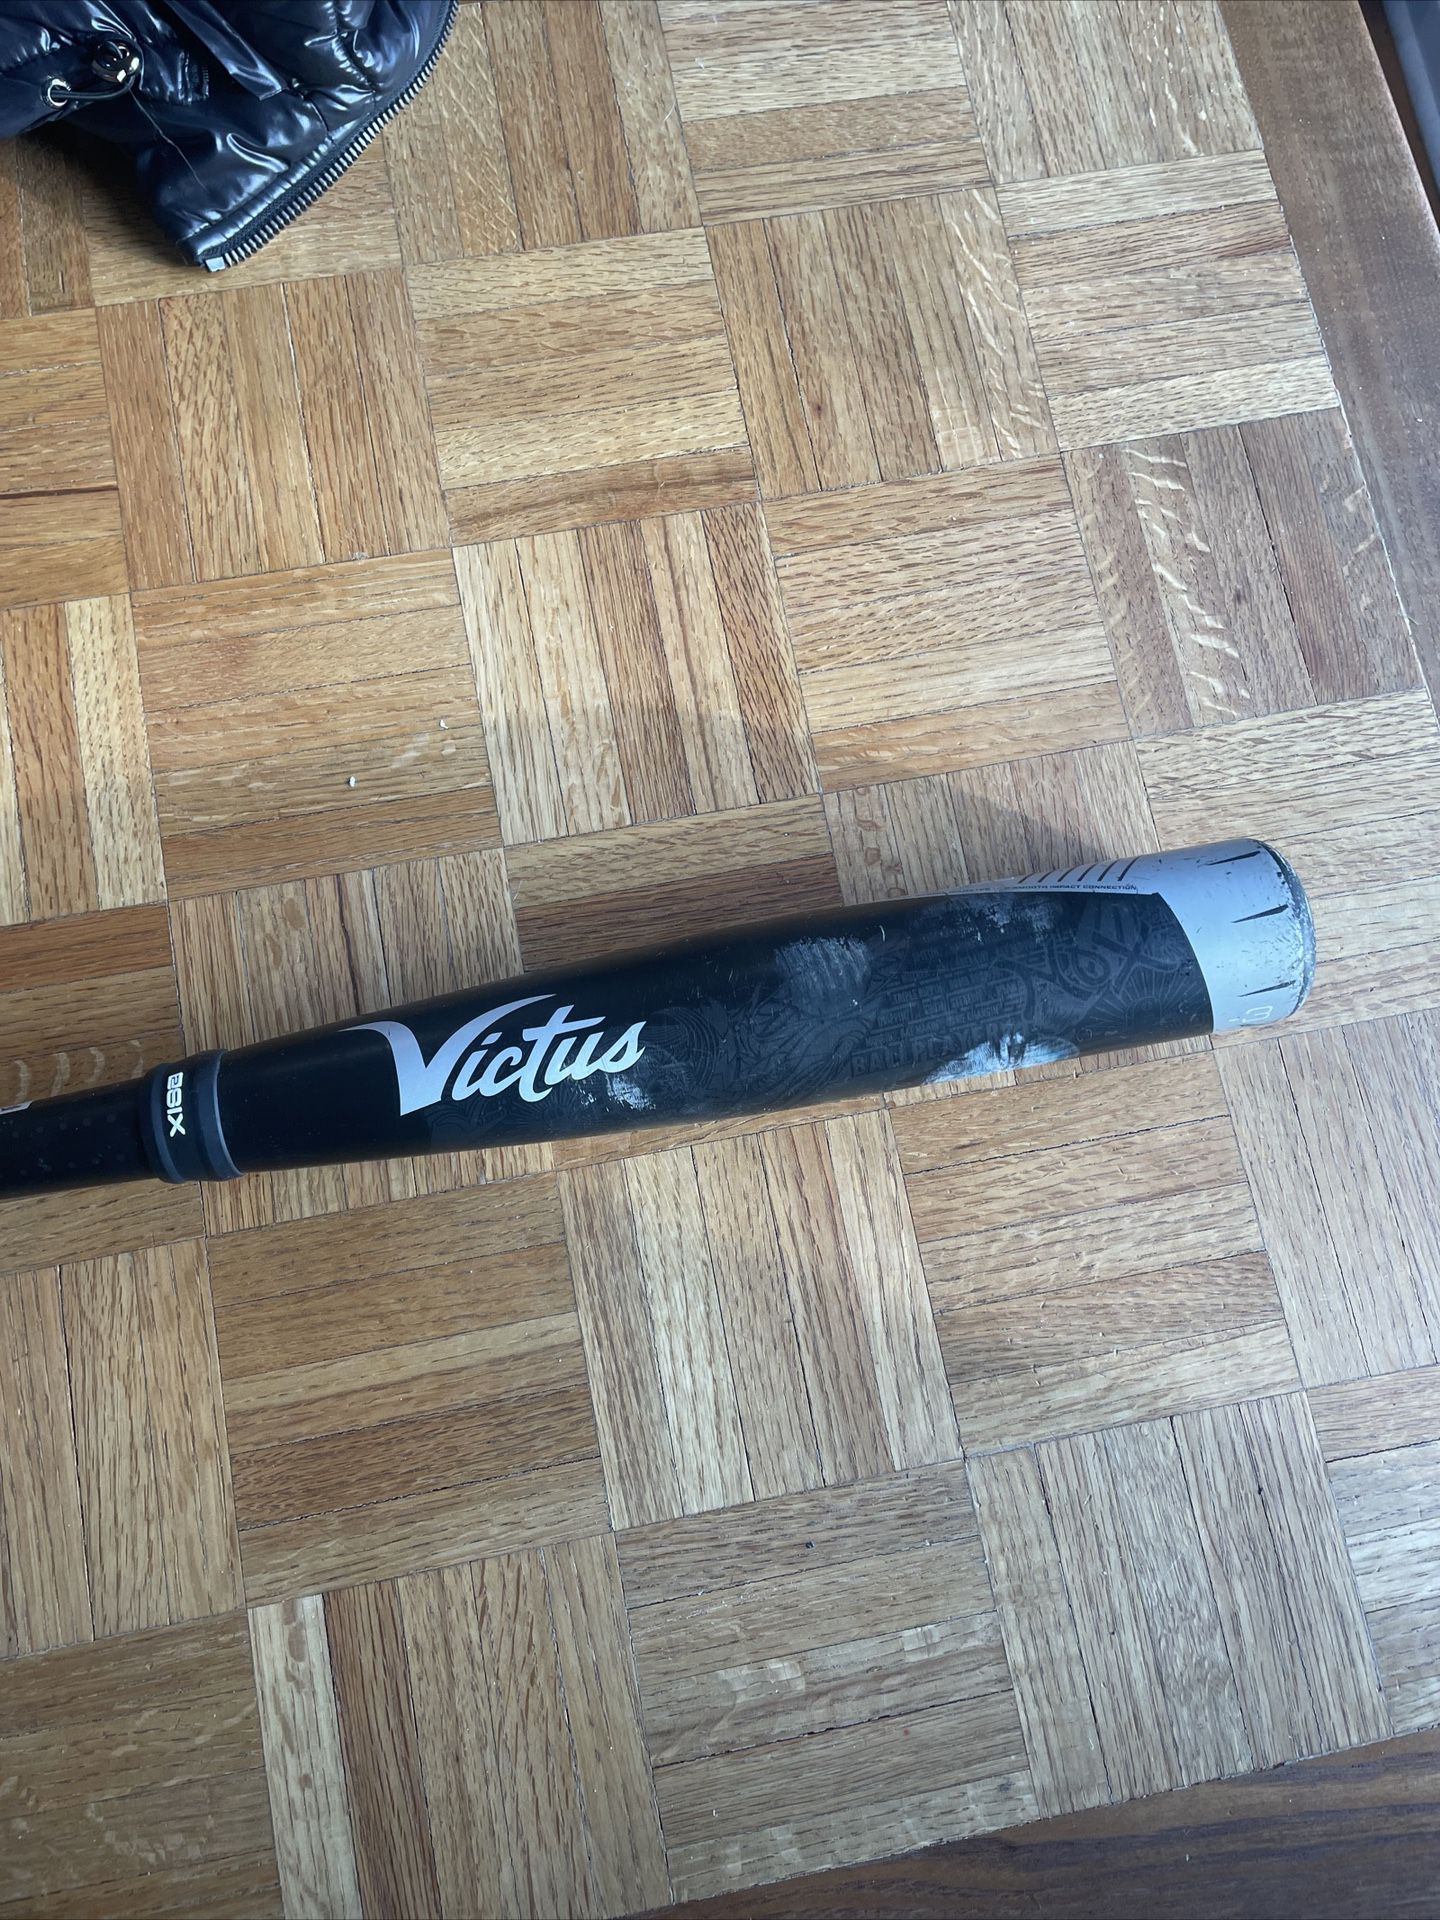 Victus Nox -3 BBCOR Baseball Bat - VCBN3229